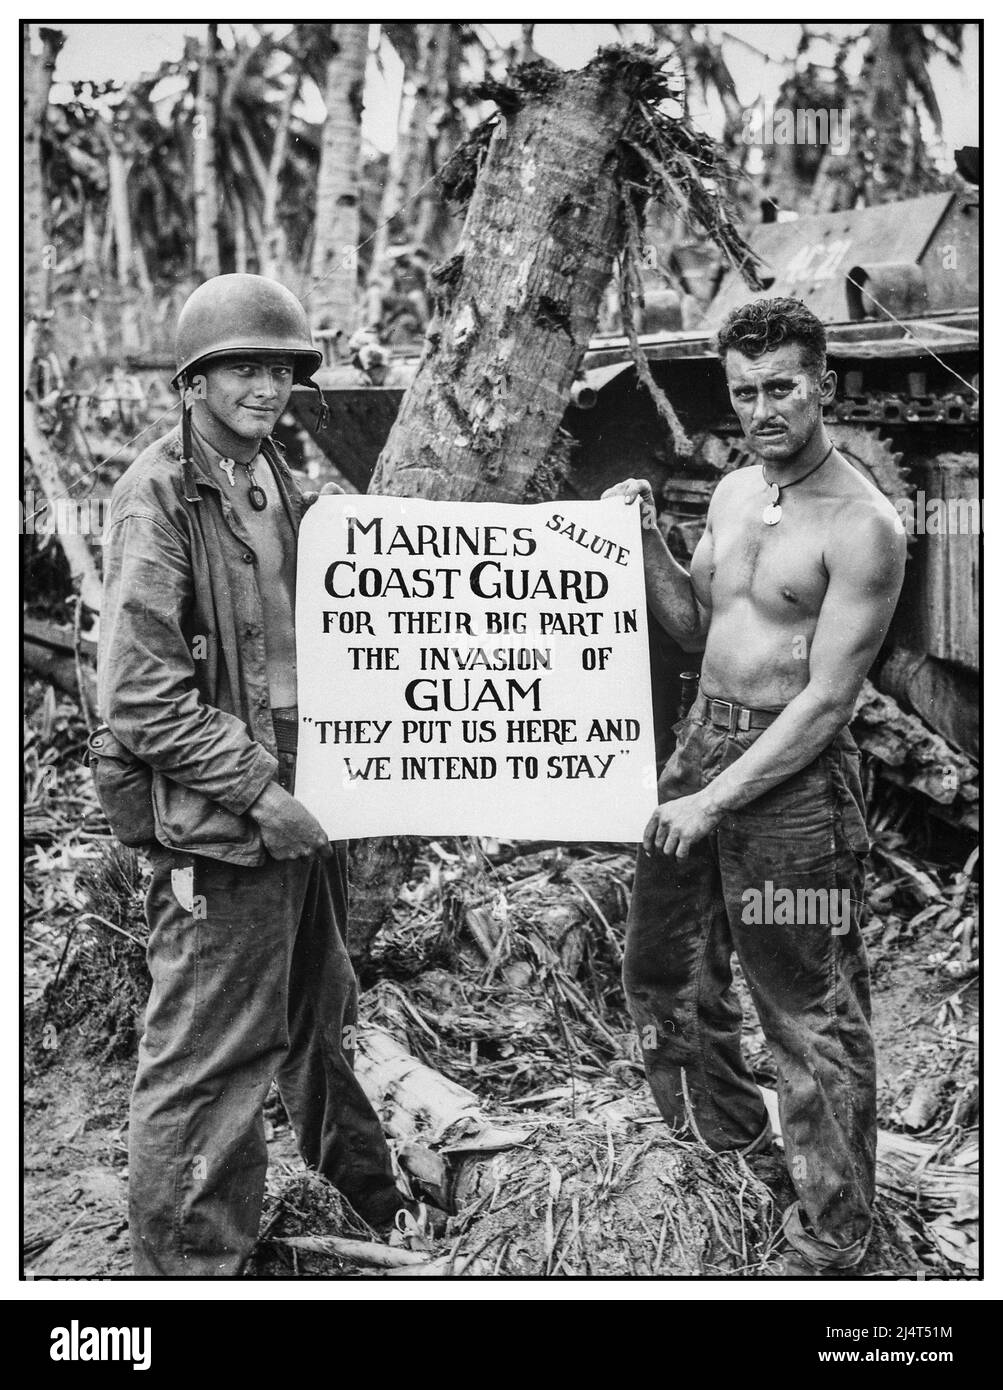 WW2 Guam 1944 die US-Marine grüßt die US-Küstenwache, nachdem die Wut der Schlacht nachgelassen und die Japaner auf Guam besiegt worden waren. „Sie (die Küstenwache) haben uns hierher gebracht und wir beabsichtigen zu bleiben“, so empfanden die Marineinfanteristen es mit diesem künstlerischen Schild, das von einigen GI-Soldaten mit Hundemarken gehalten wurde und für die Kamera und die Leute zu Hause produziert wurde. Stockfoto